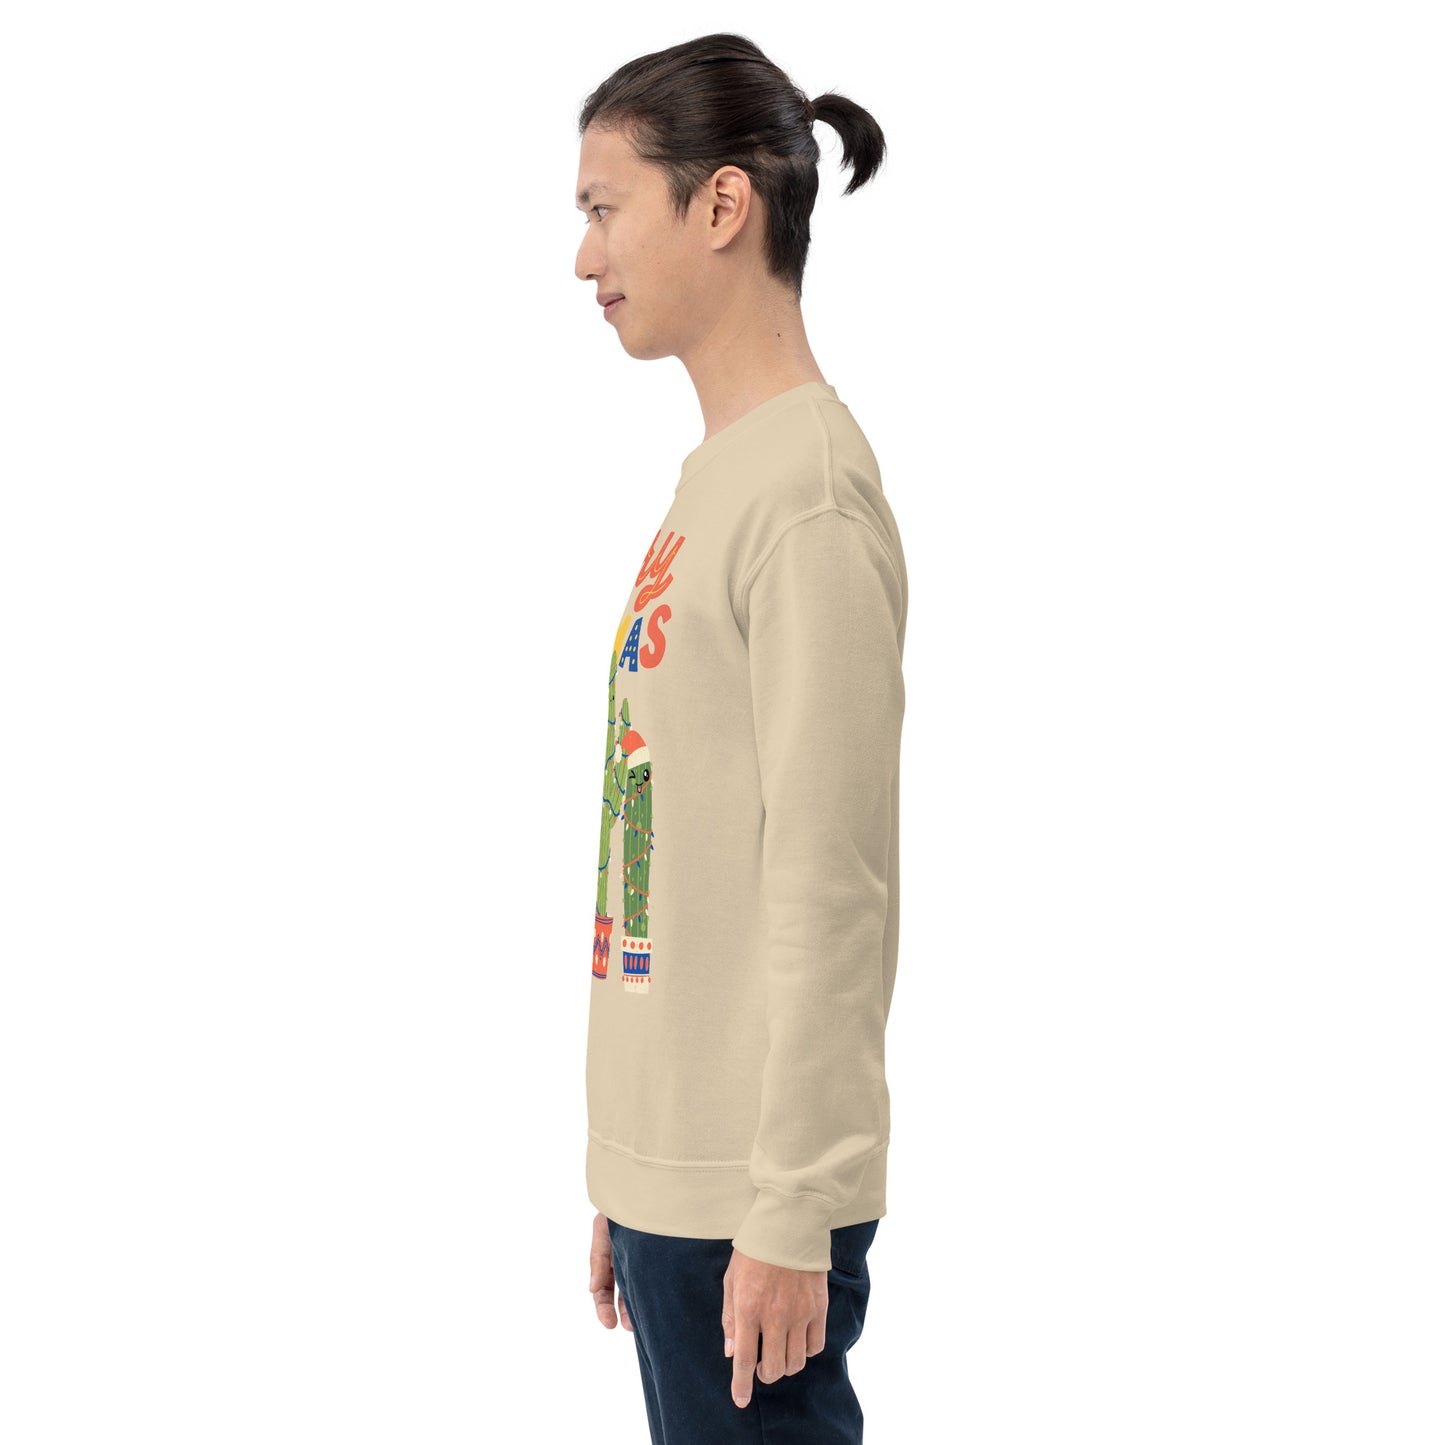 Merry Christmas Cactus Ugly Sweatshirt